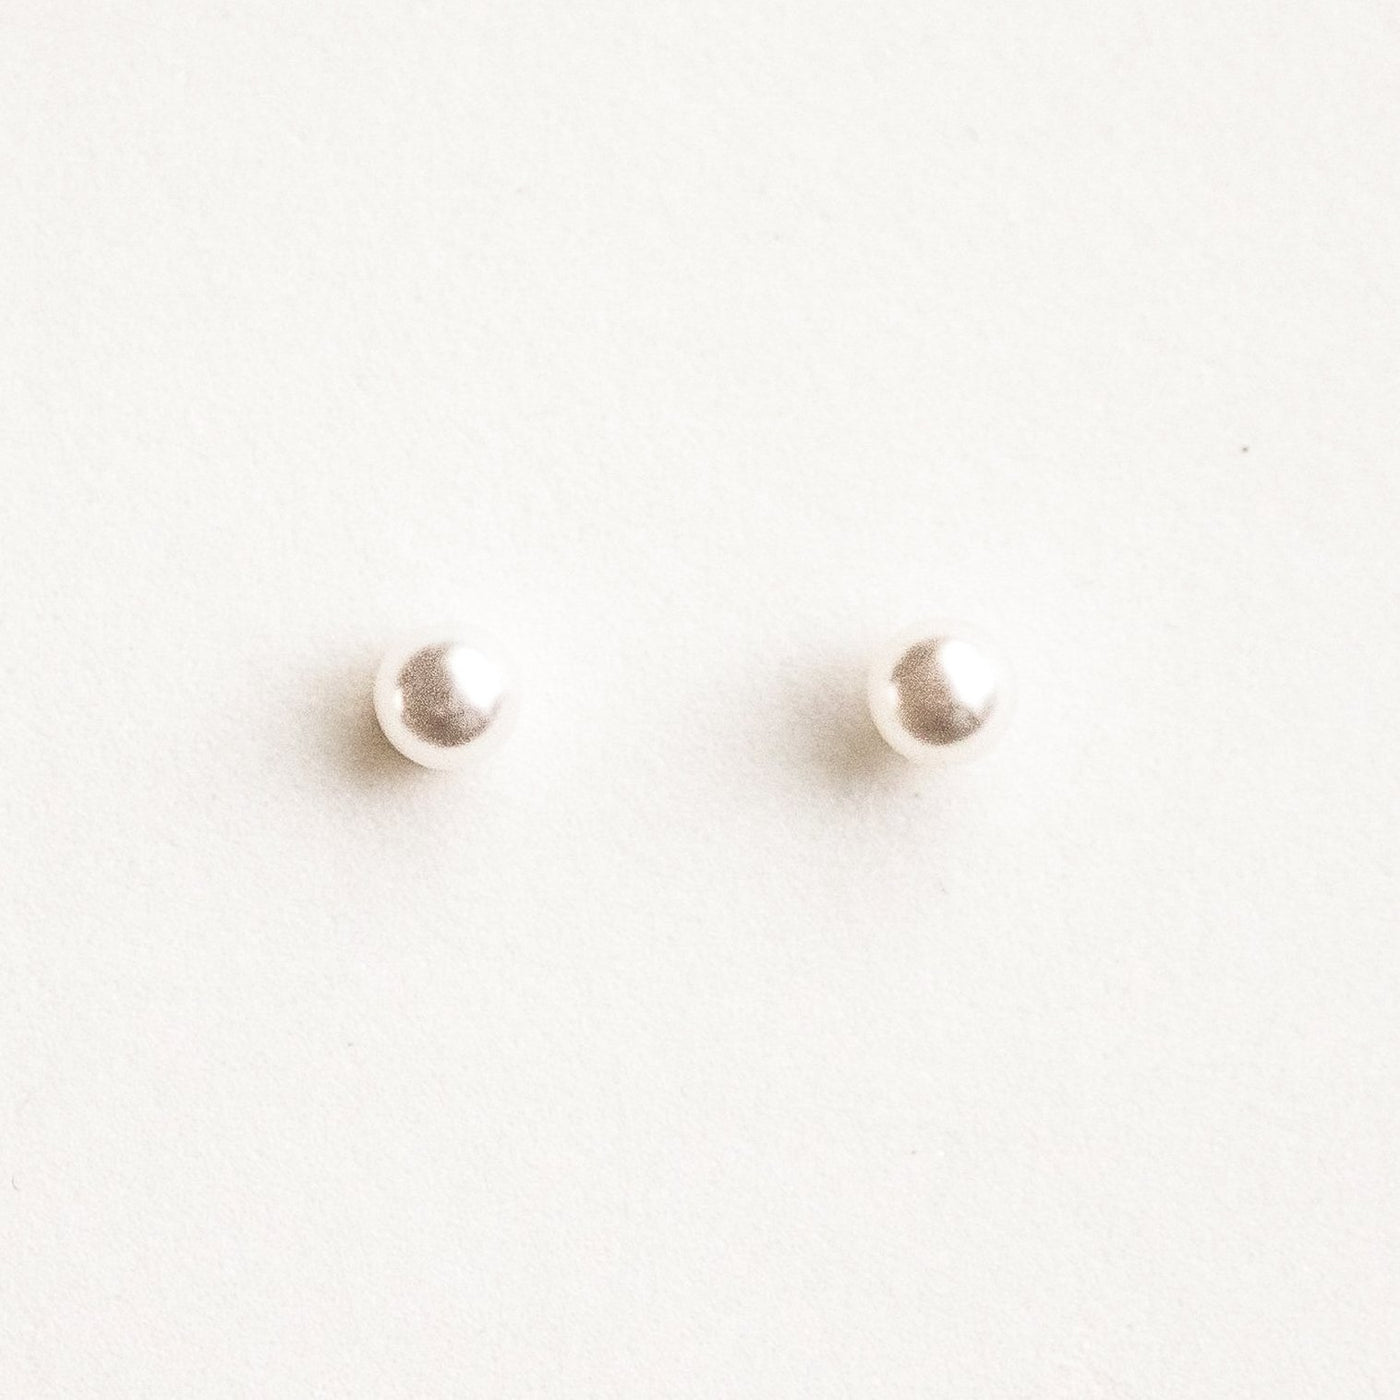 Pearl Stud Earrings by Simple & Dainty Jewelry